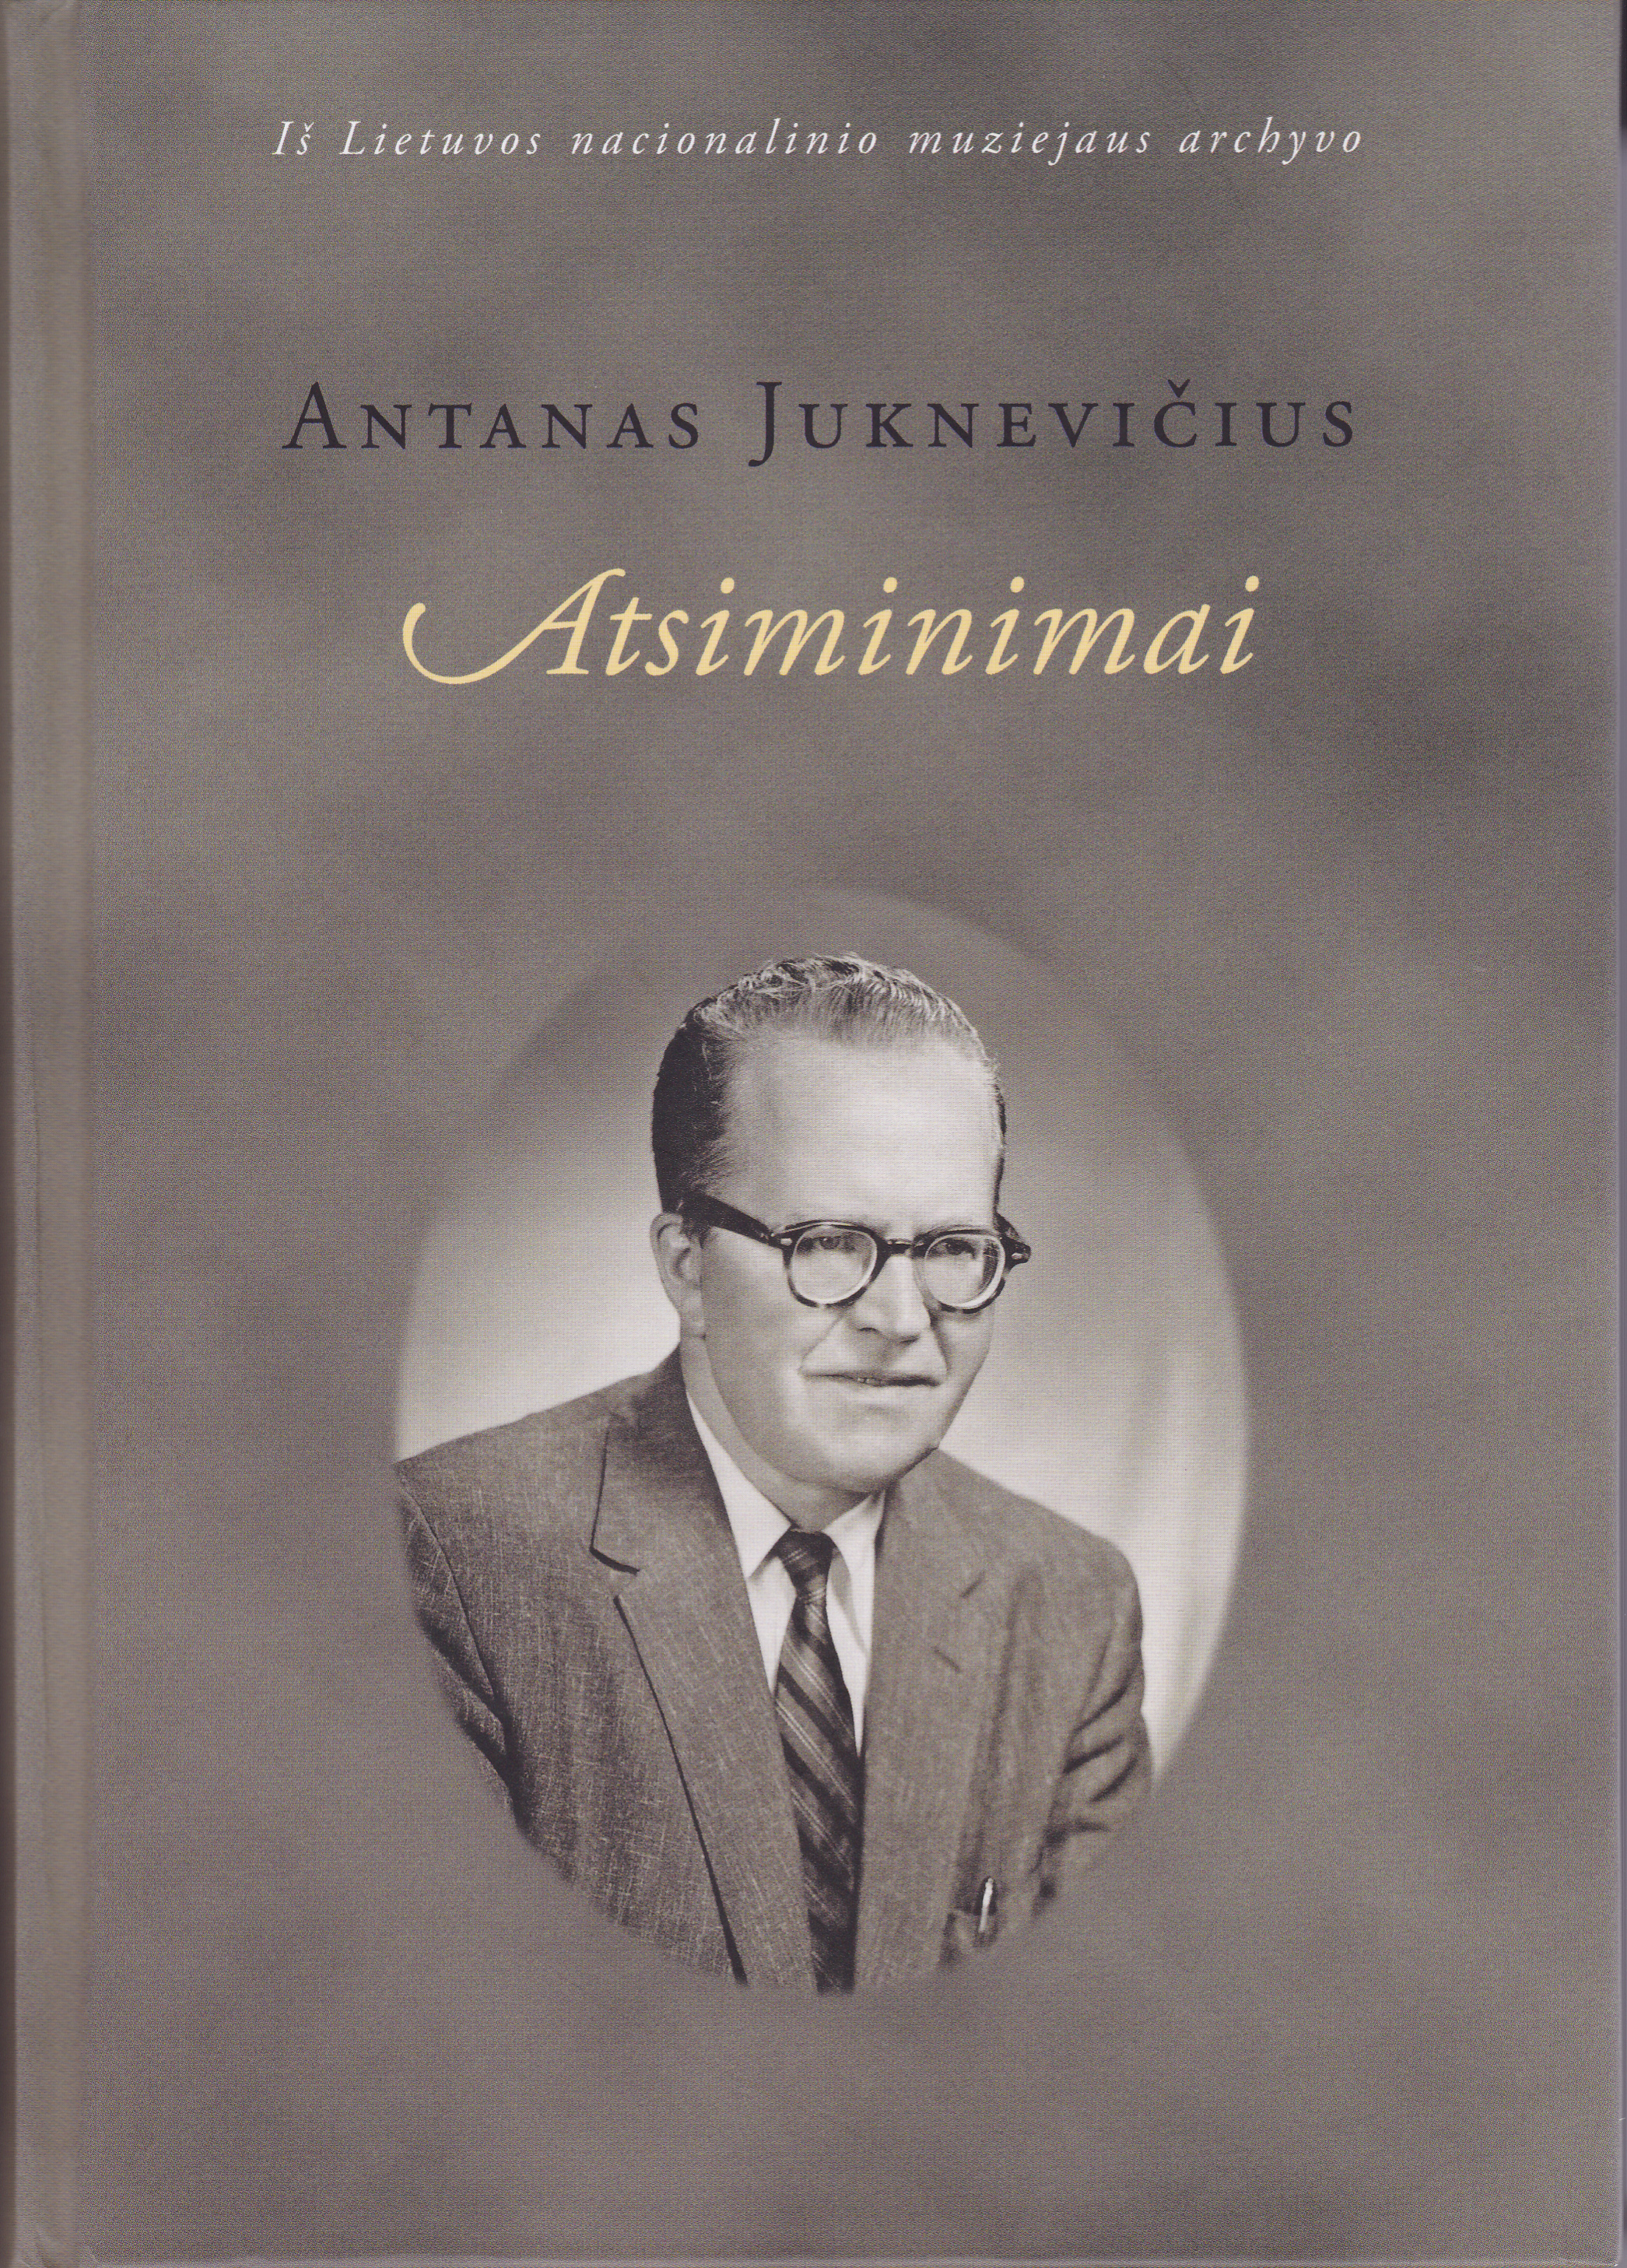 Pristatyta vilniečio advokato Antano Juknevičiaus atsiminimų knyga